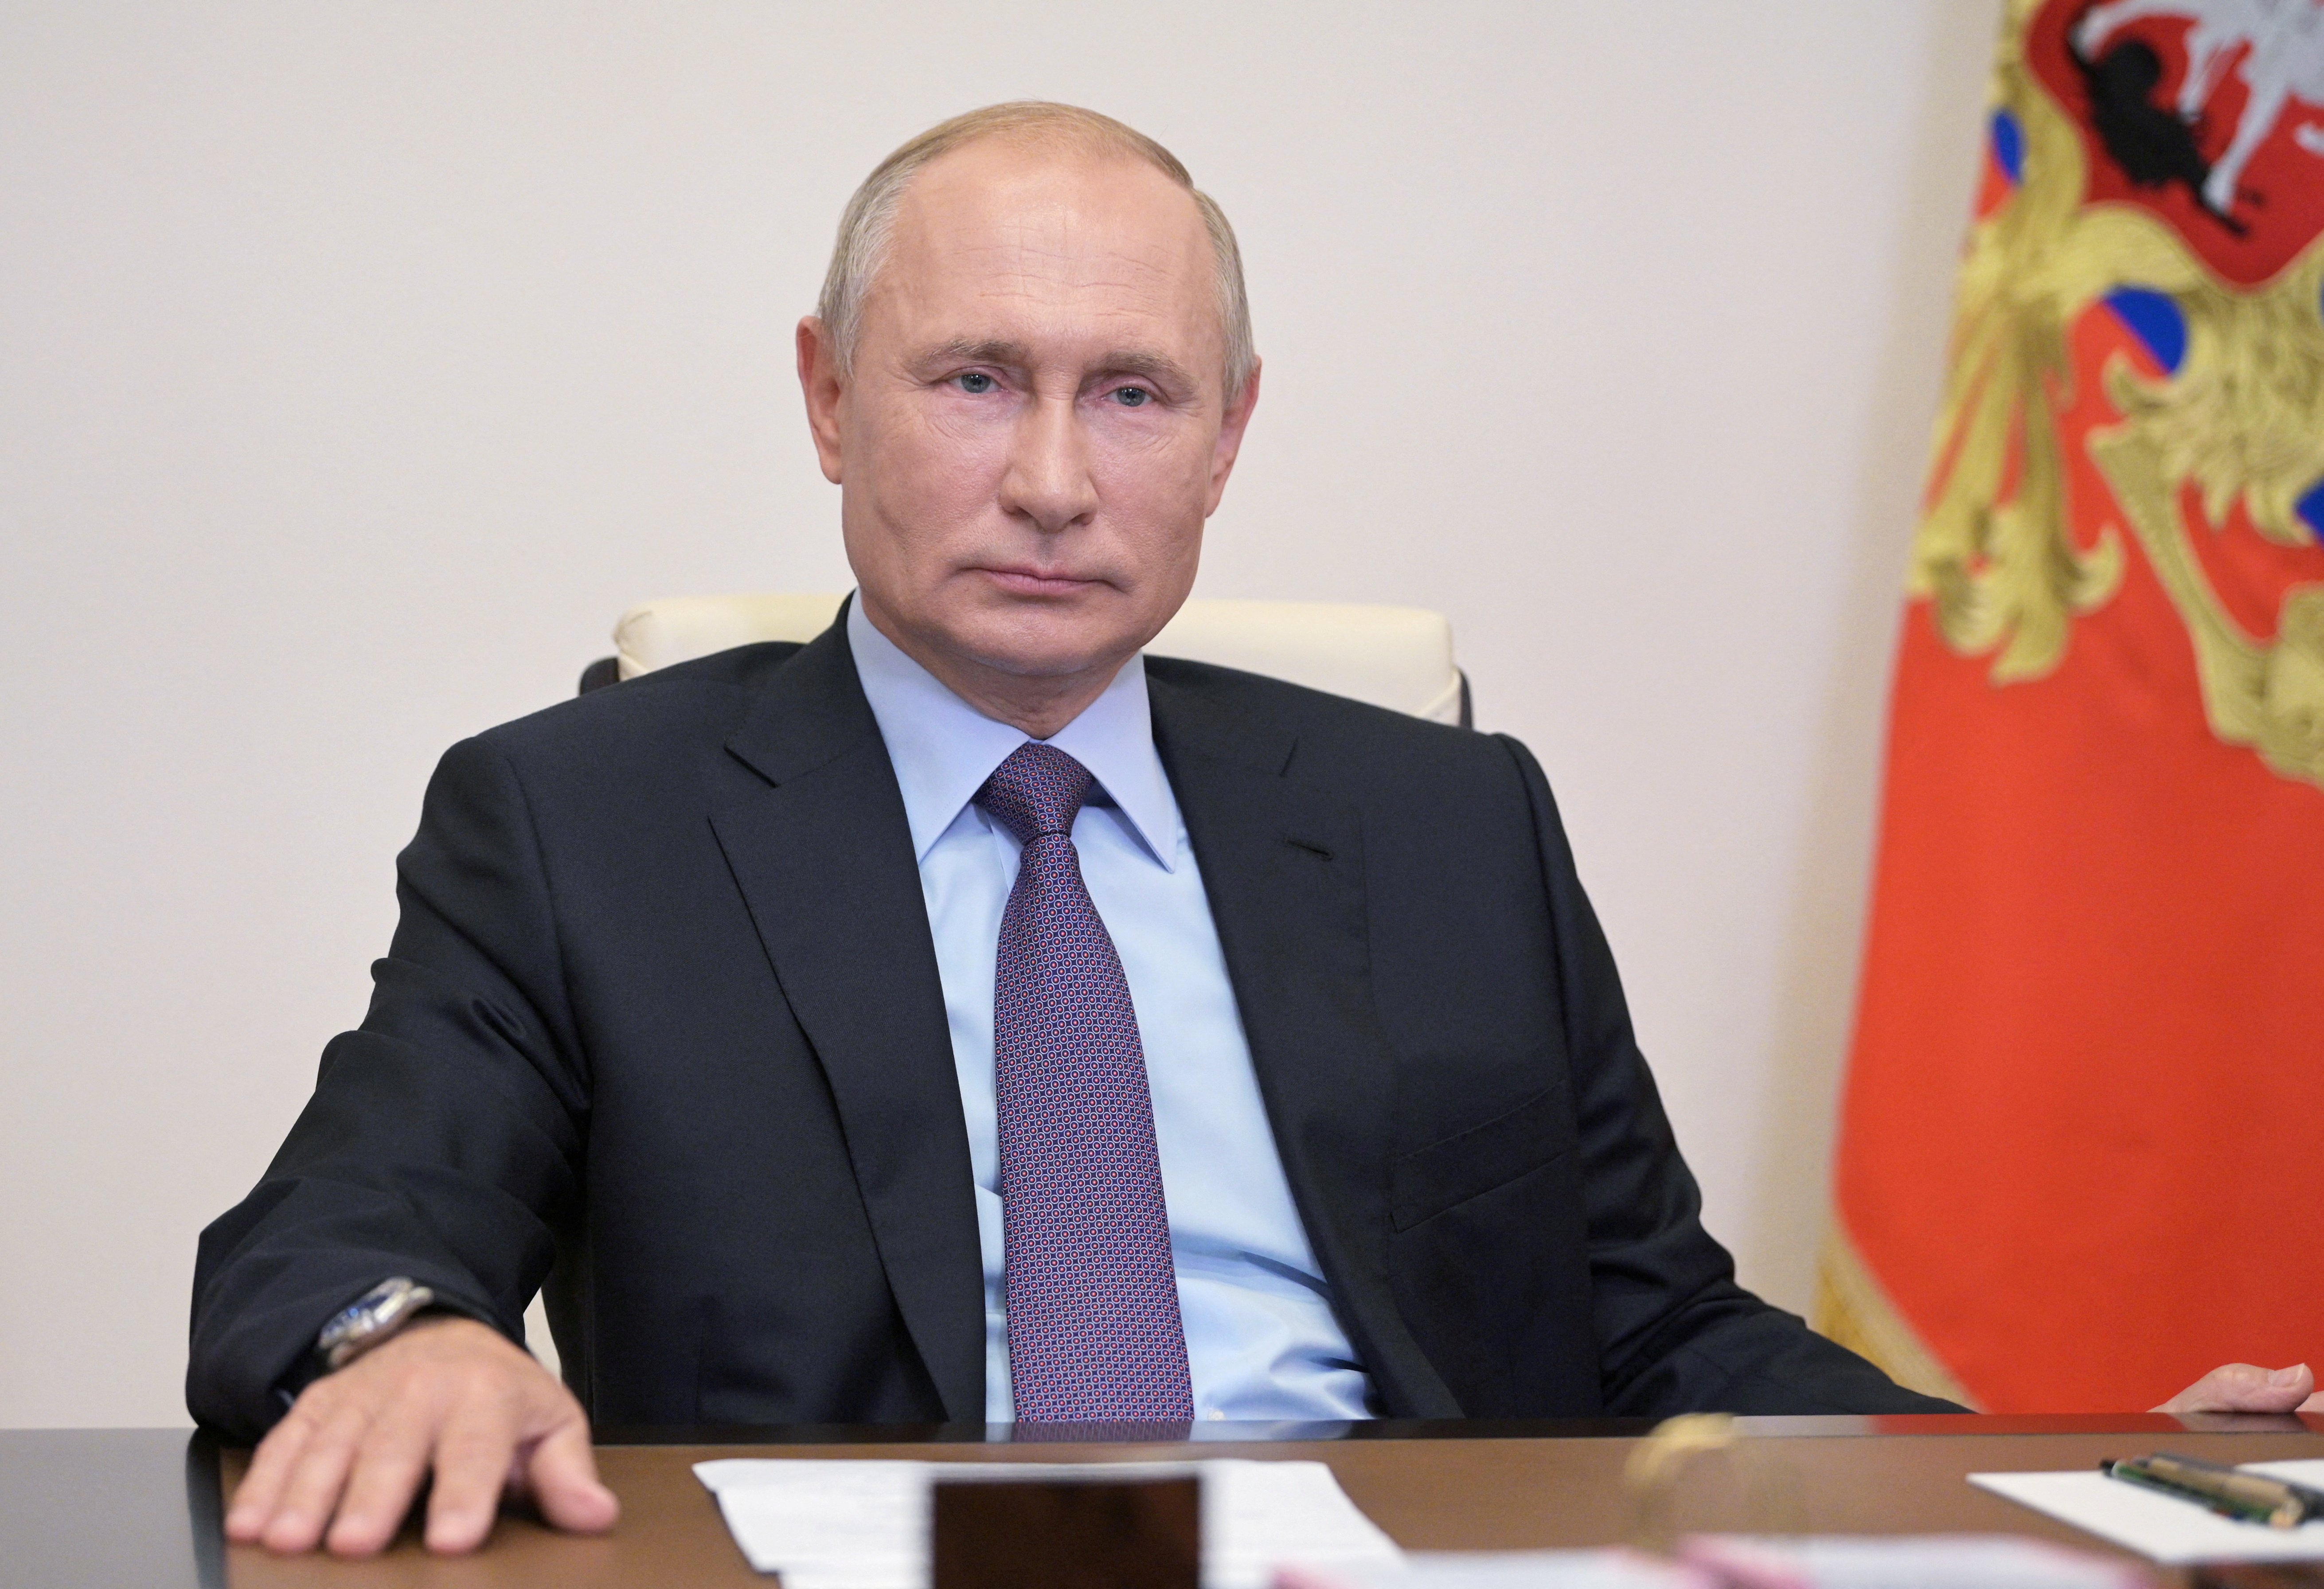 Il presidente russo Vladimir Putin è visto seduto a un tavolo